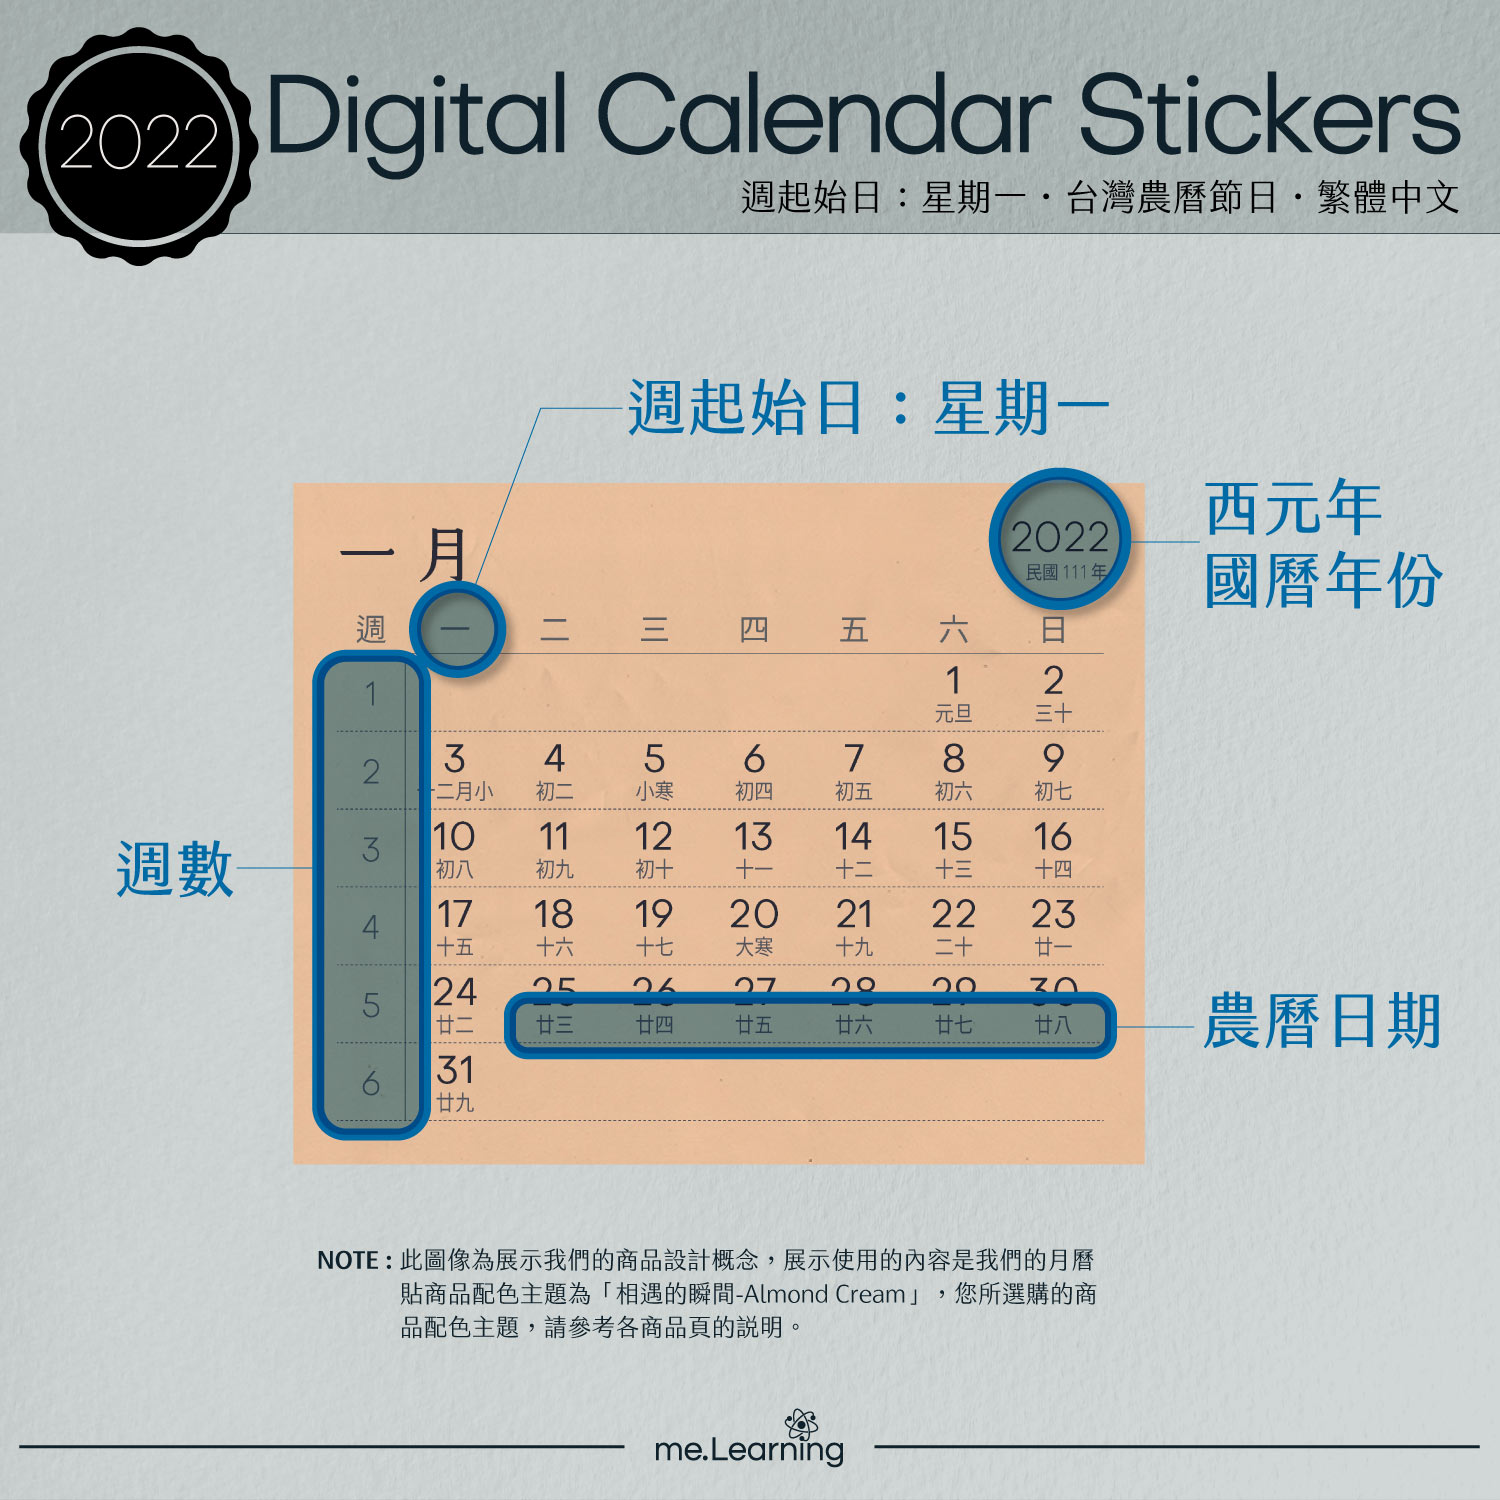 月曆貼說明- 台灣繁體中文月份 - 農曆 - 星期一開始 - @meLearningLab